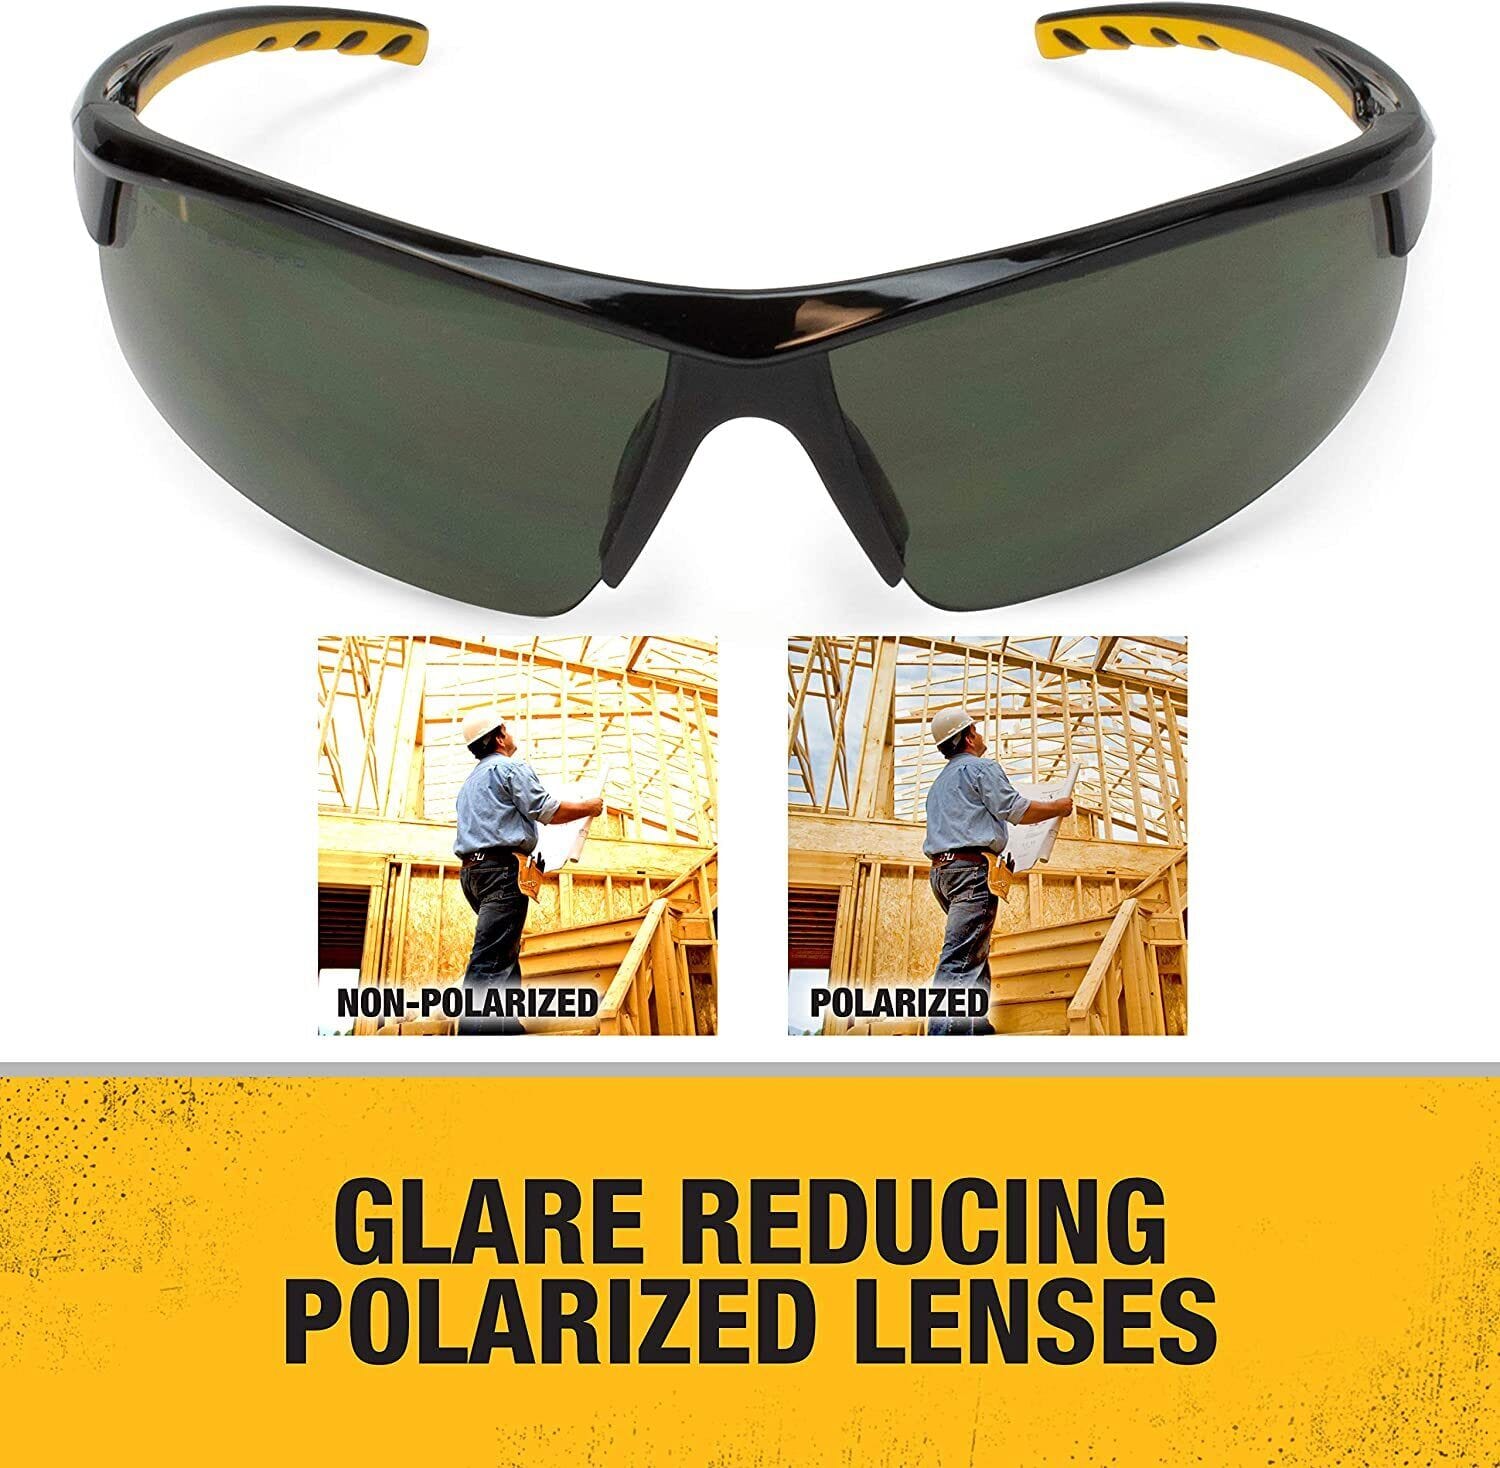 Dewalt HDP DPG99 Features Glare Reducing Polarized Lenses